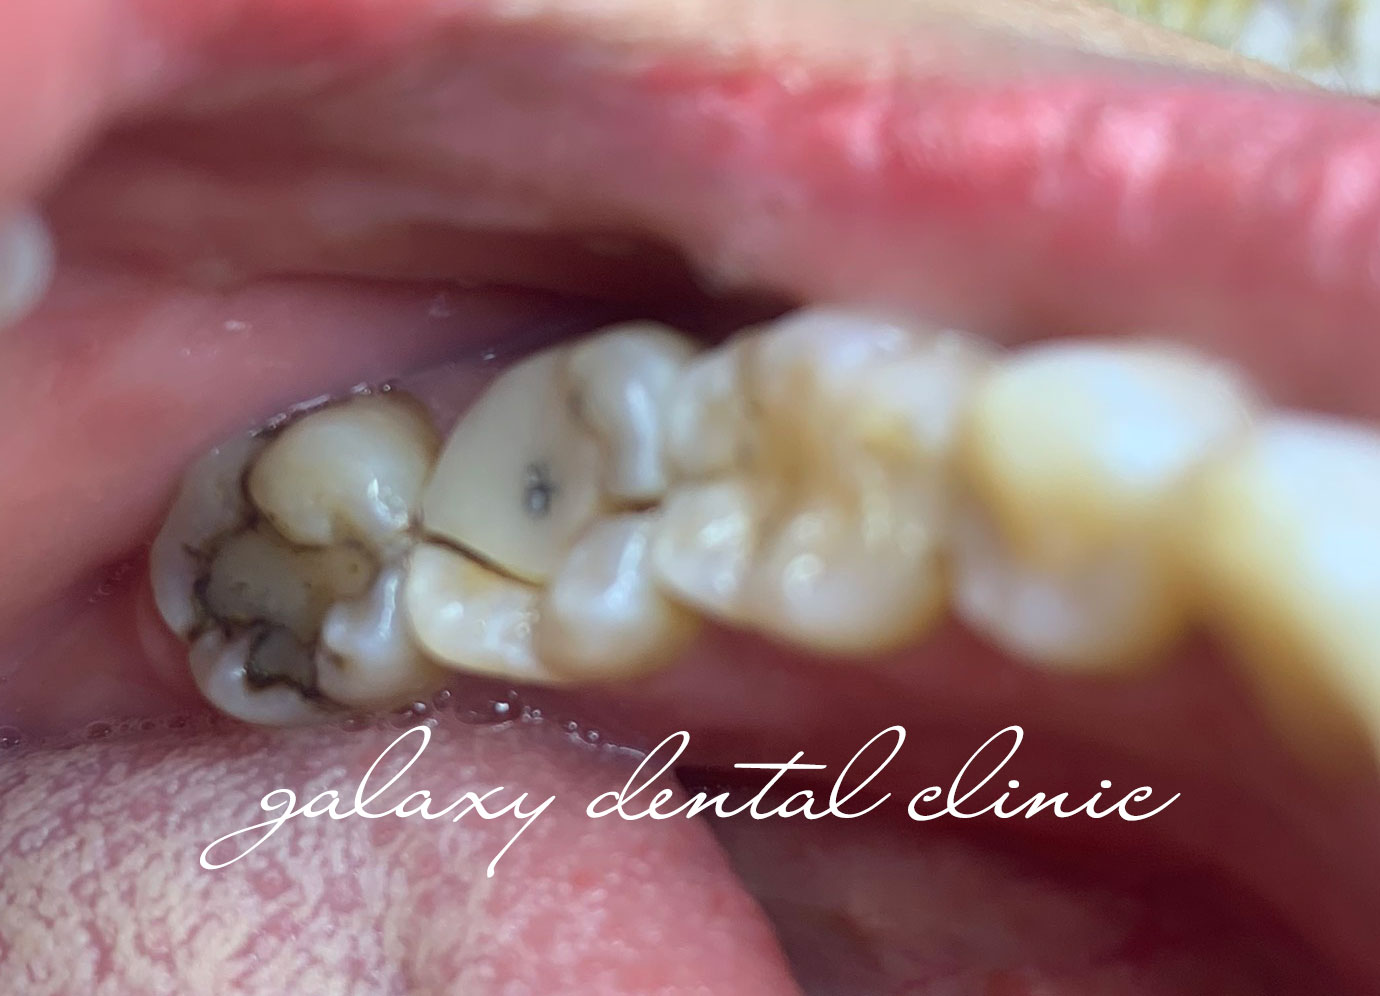 Nếu răng lấy tủy bị vỡ, liệu có thể phục hồi răng bằng phương pháp thẩm mỹ?
